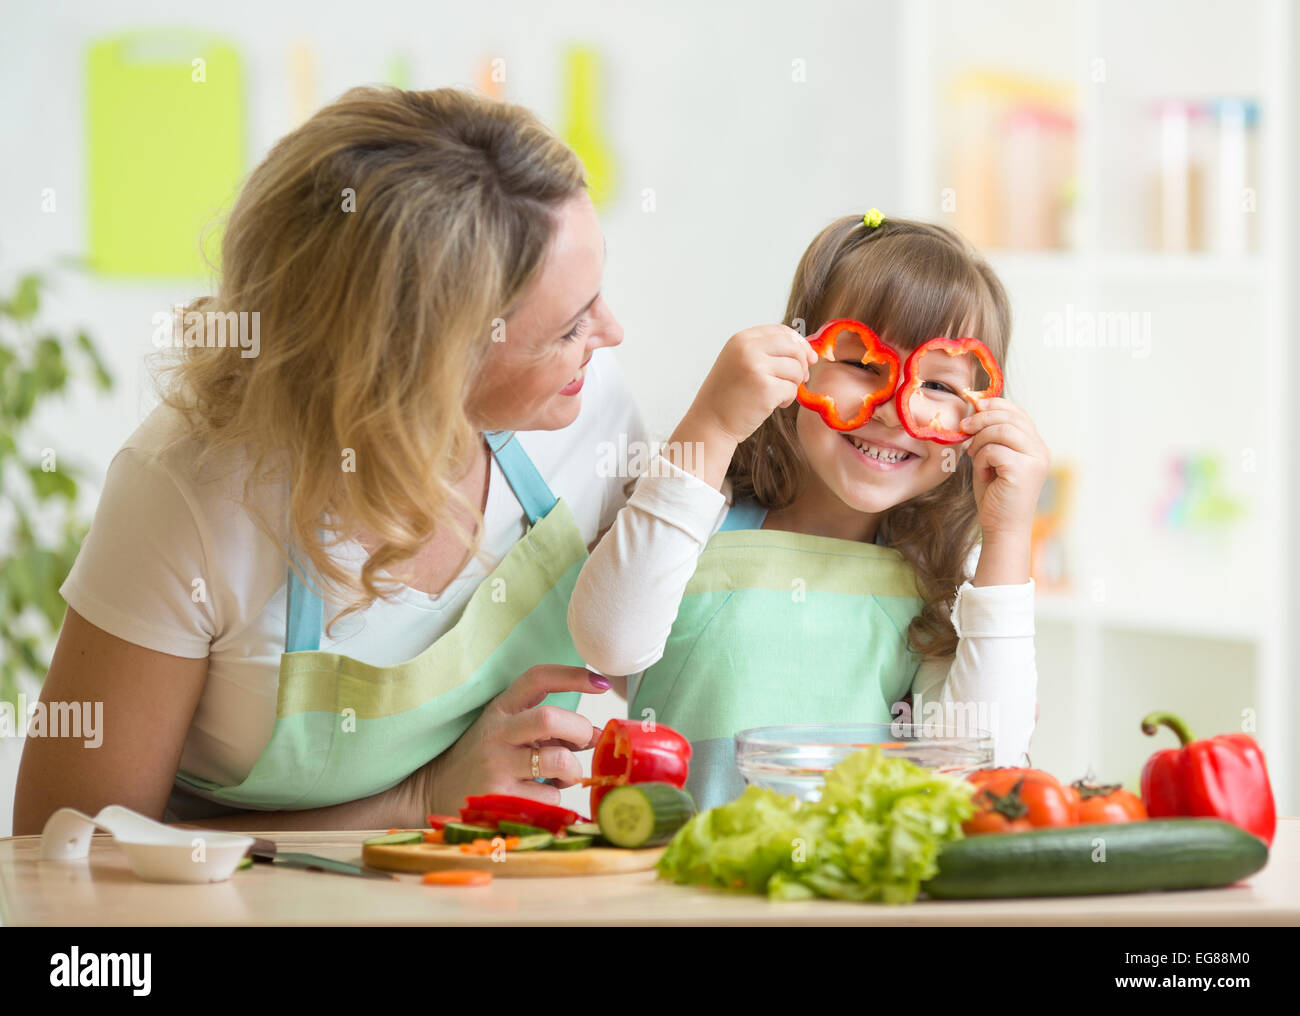 Mère et son enfant la préparation d'aliments sains et d'avoir du plaisir Banque D'Images